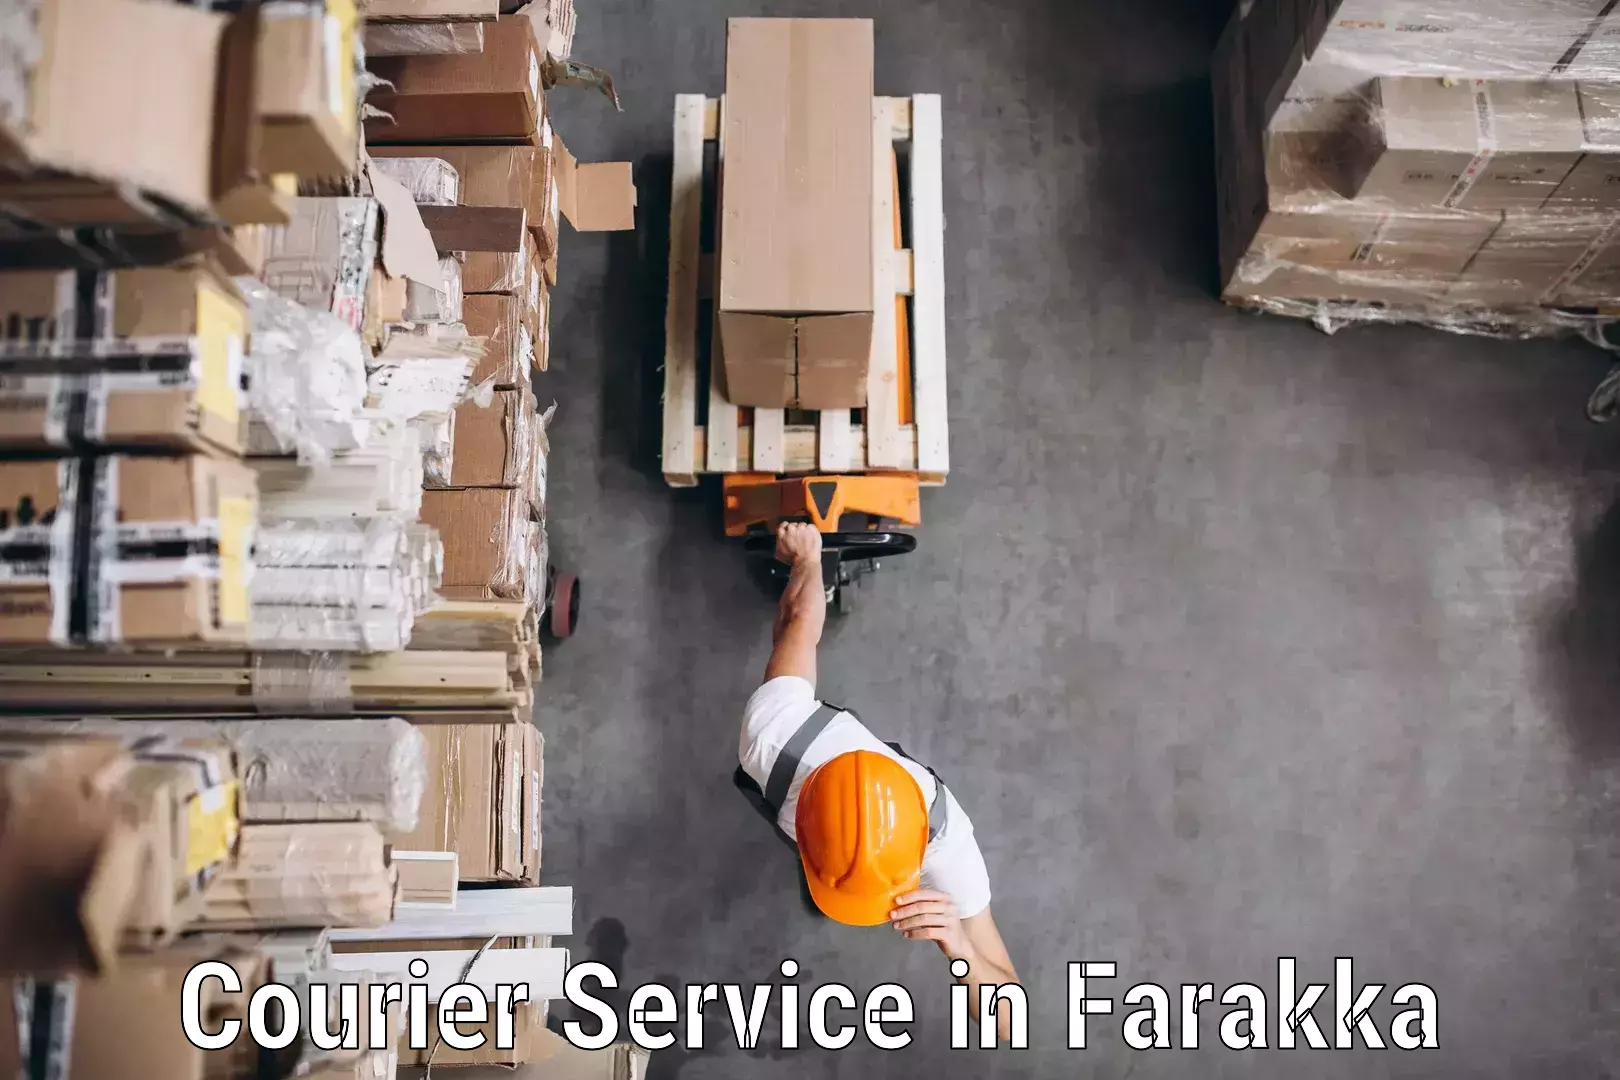 24/7 courier service in Farakka